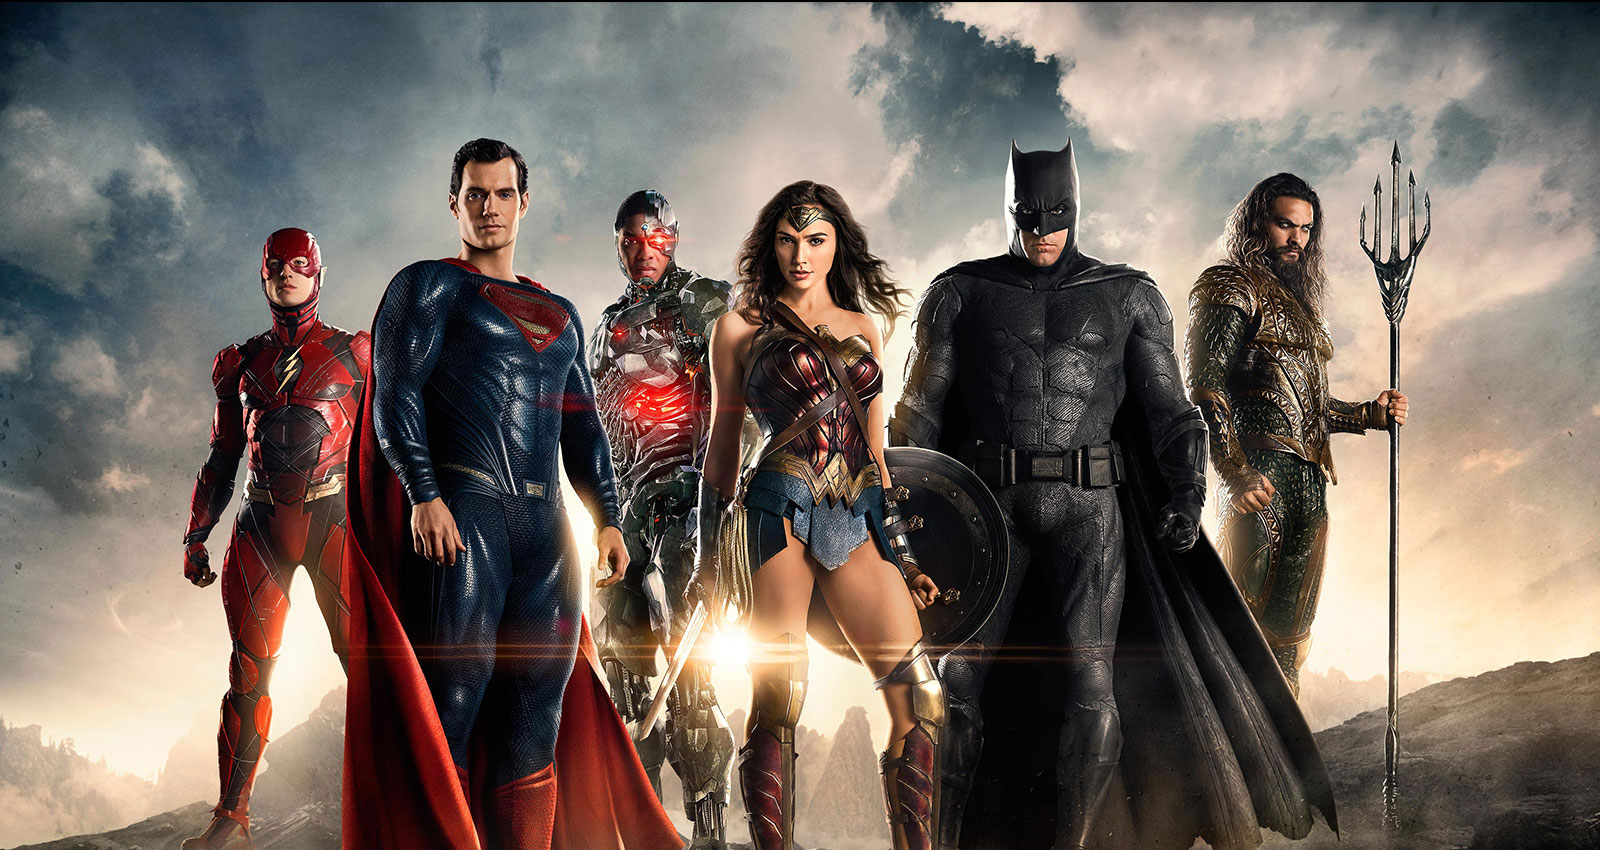  Justice League - Một trong những bộ phim quan trọng của Vũ trụ Điện ảnh DC 